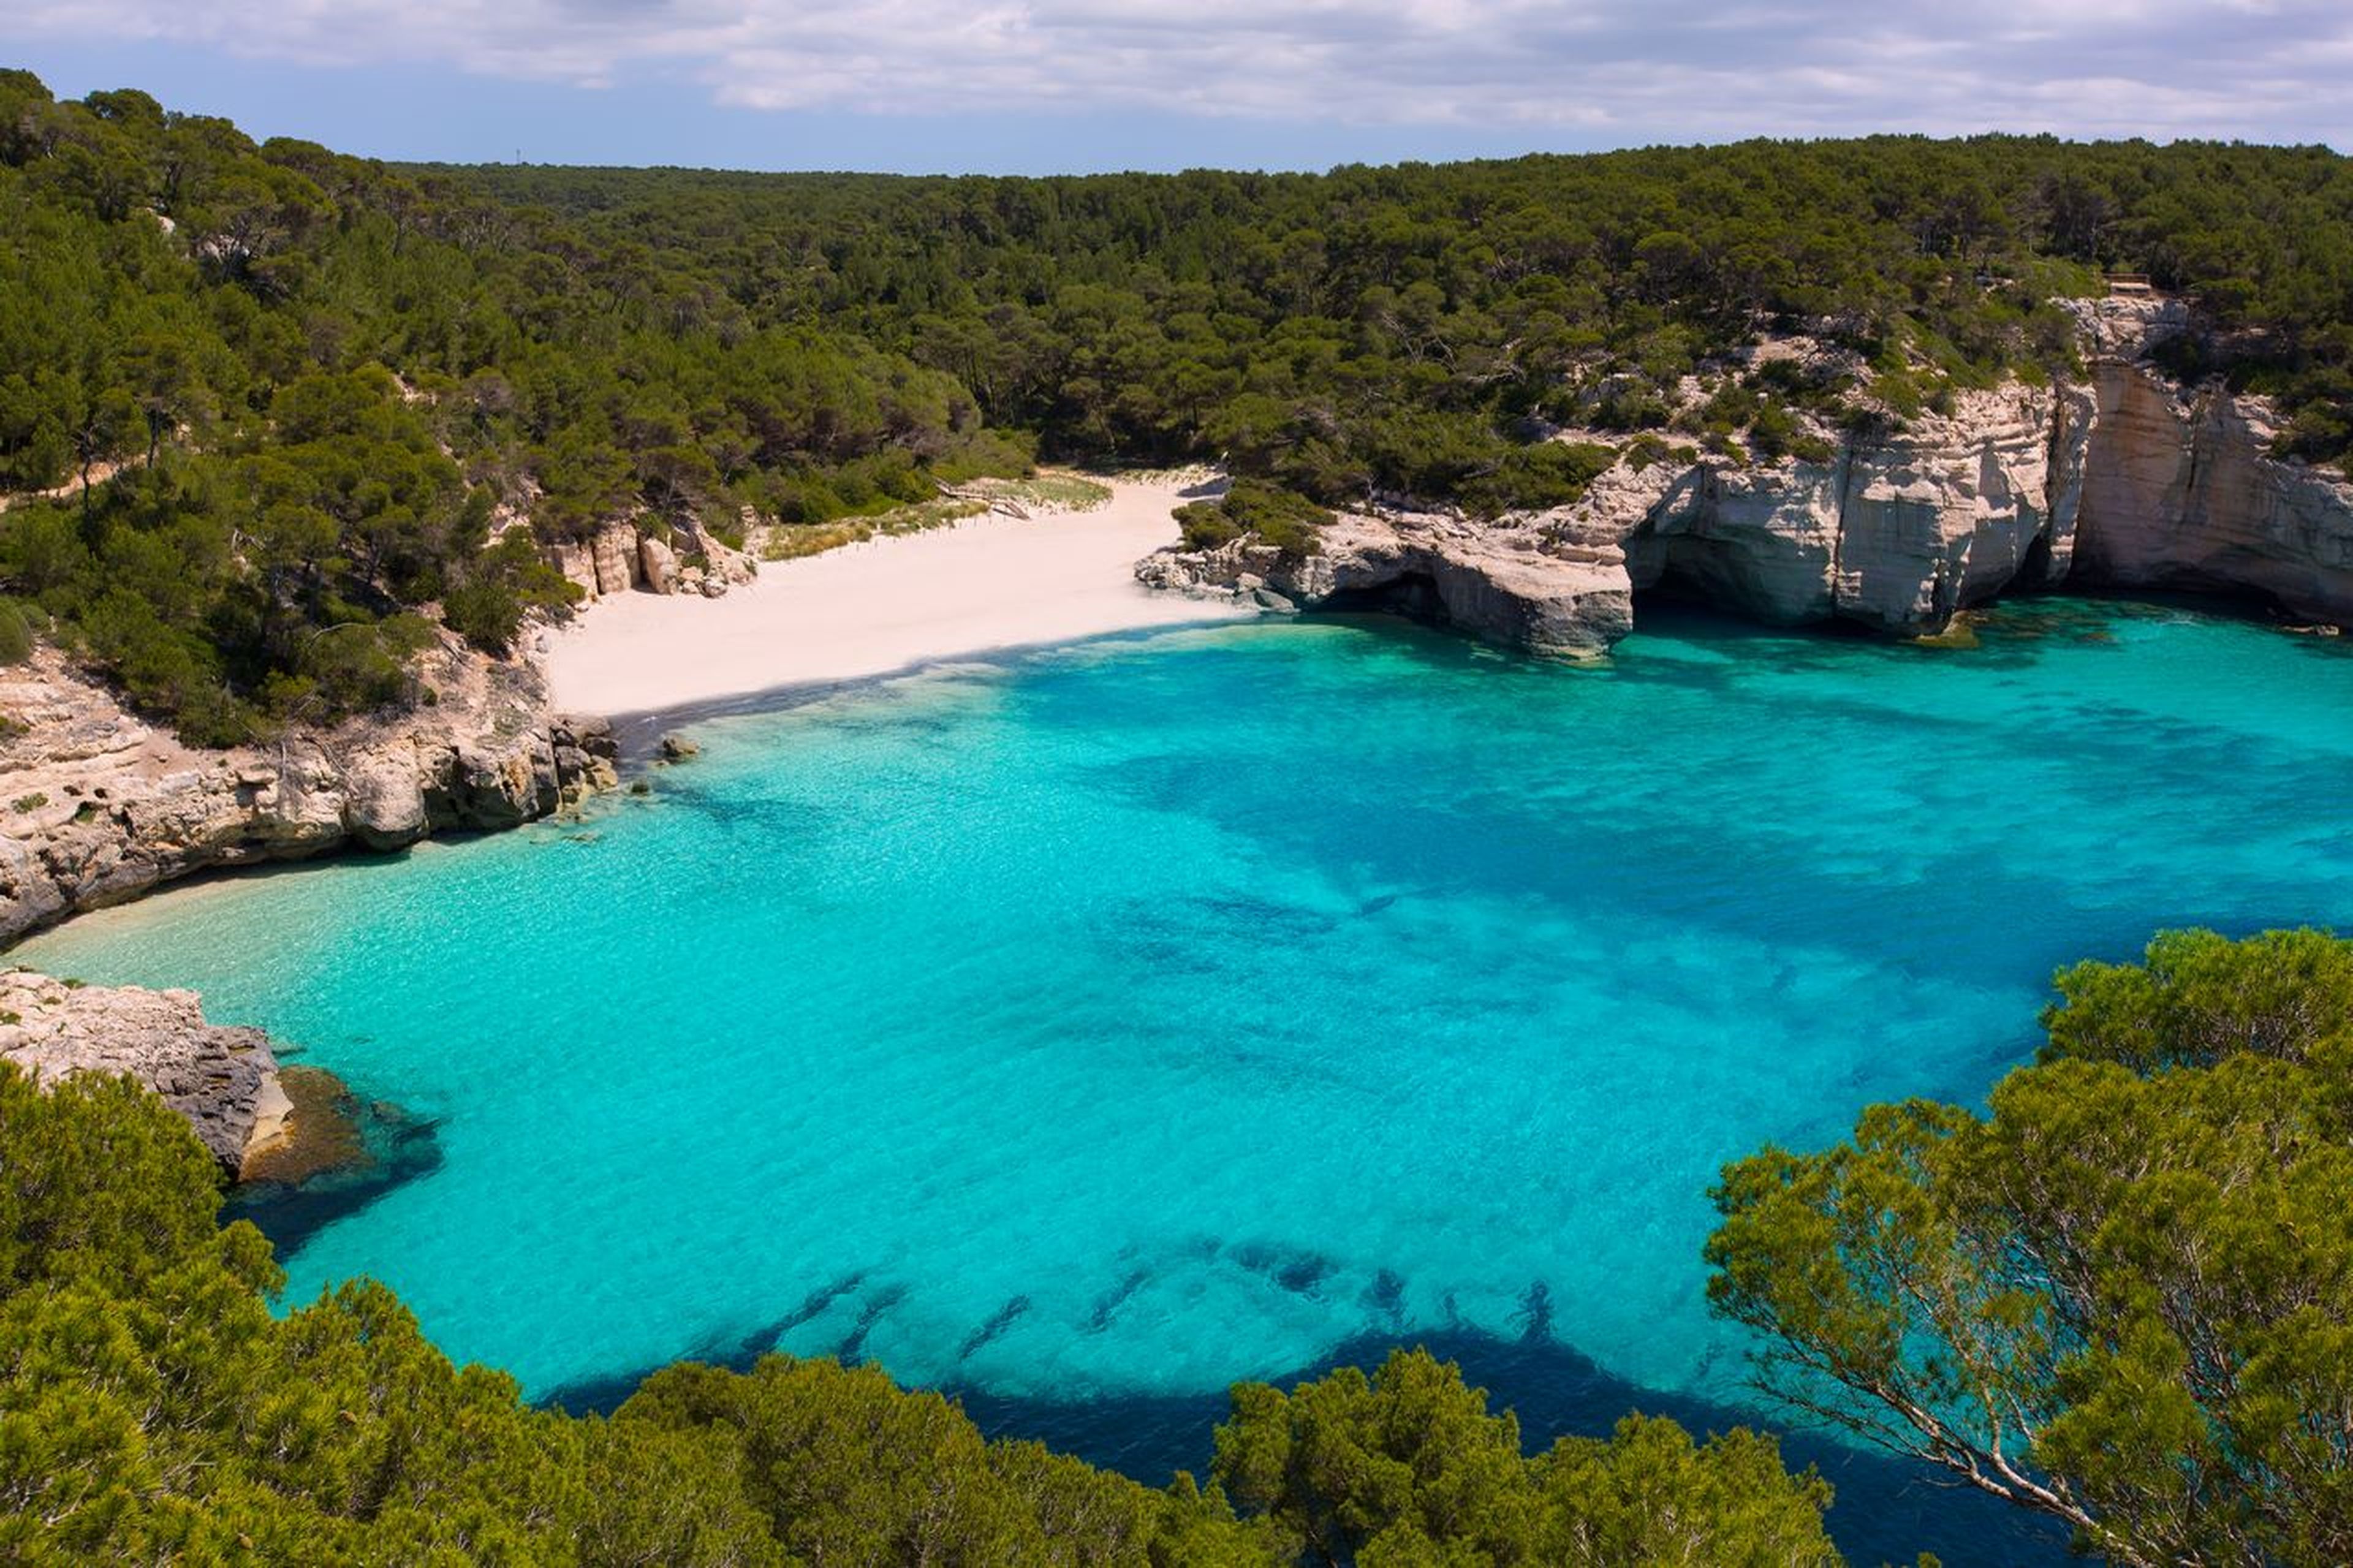 Estas son las 4 mejores playas españolas según un prestigioso ranking europeo